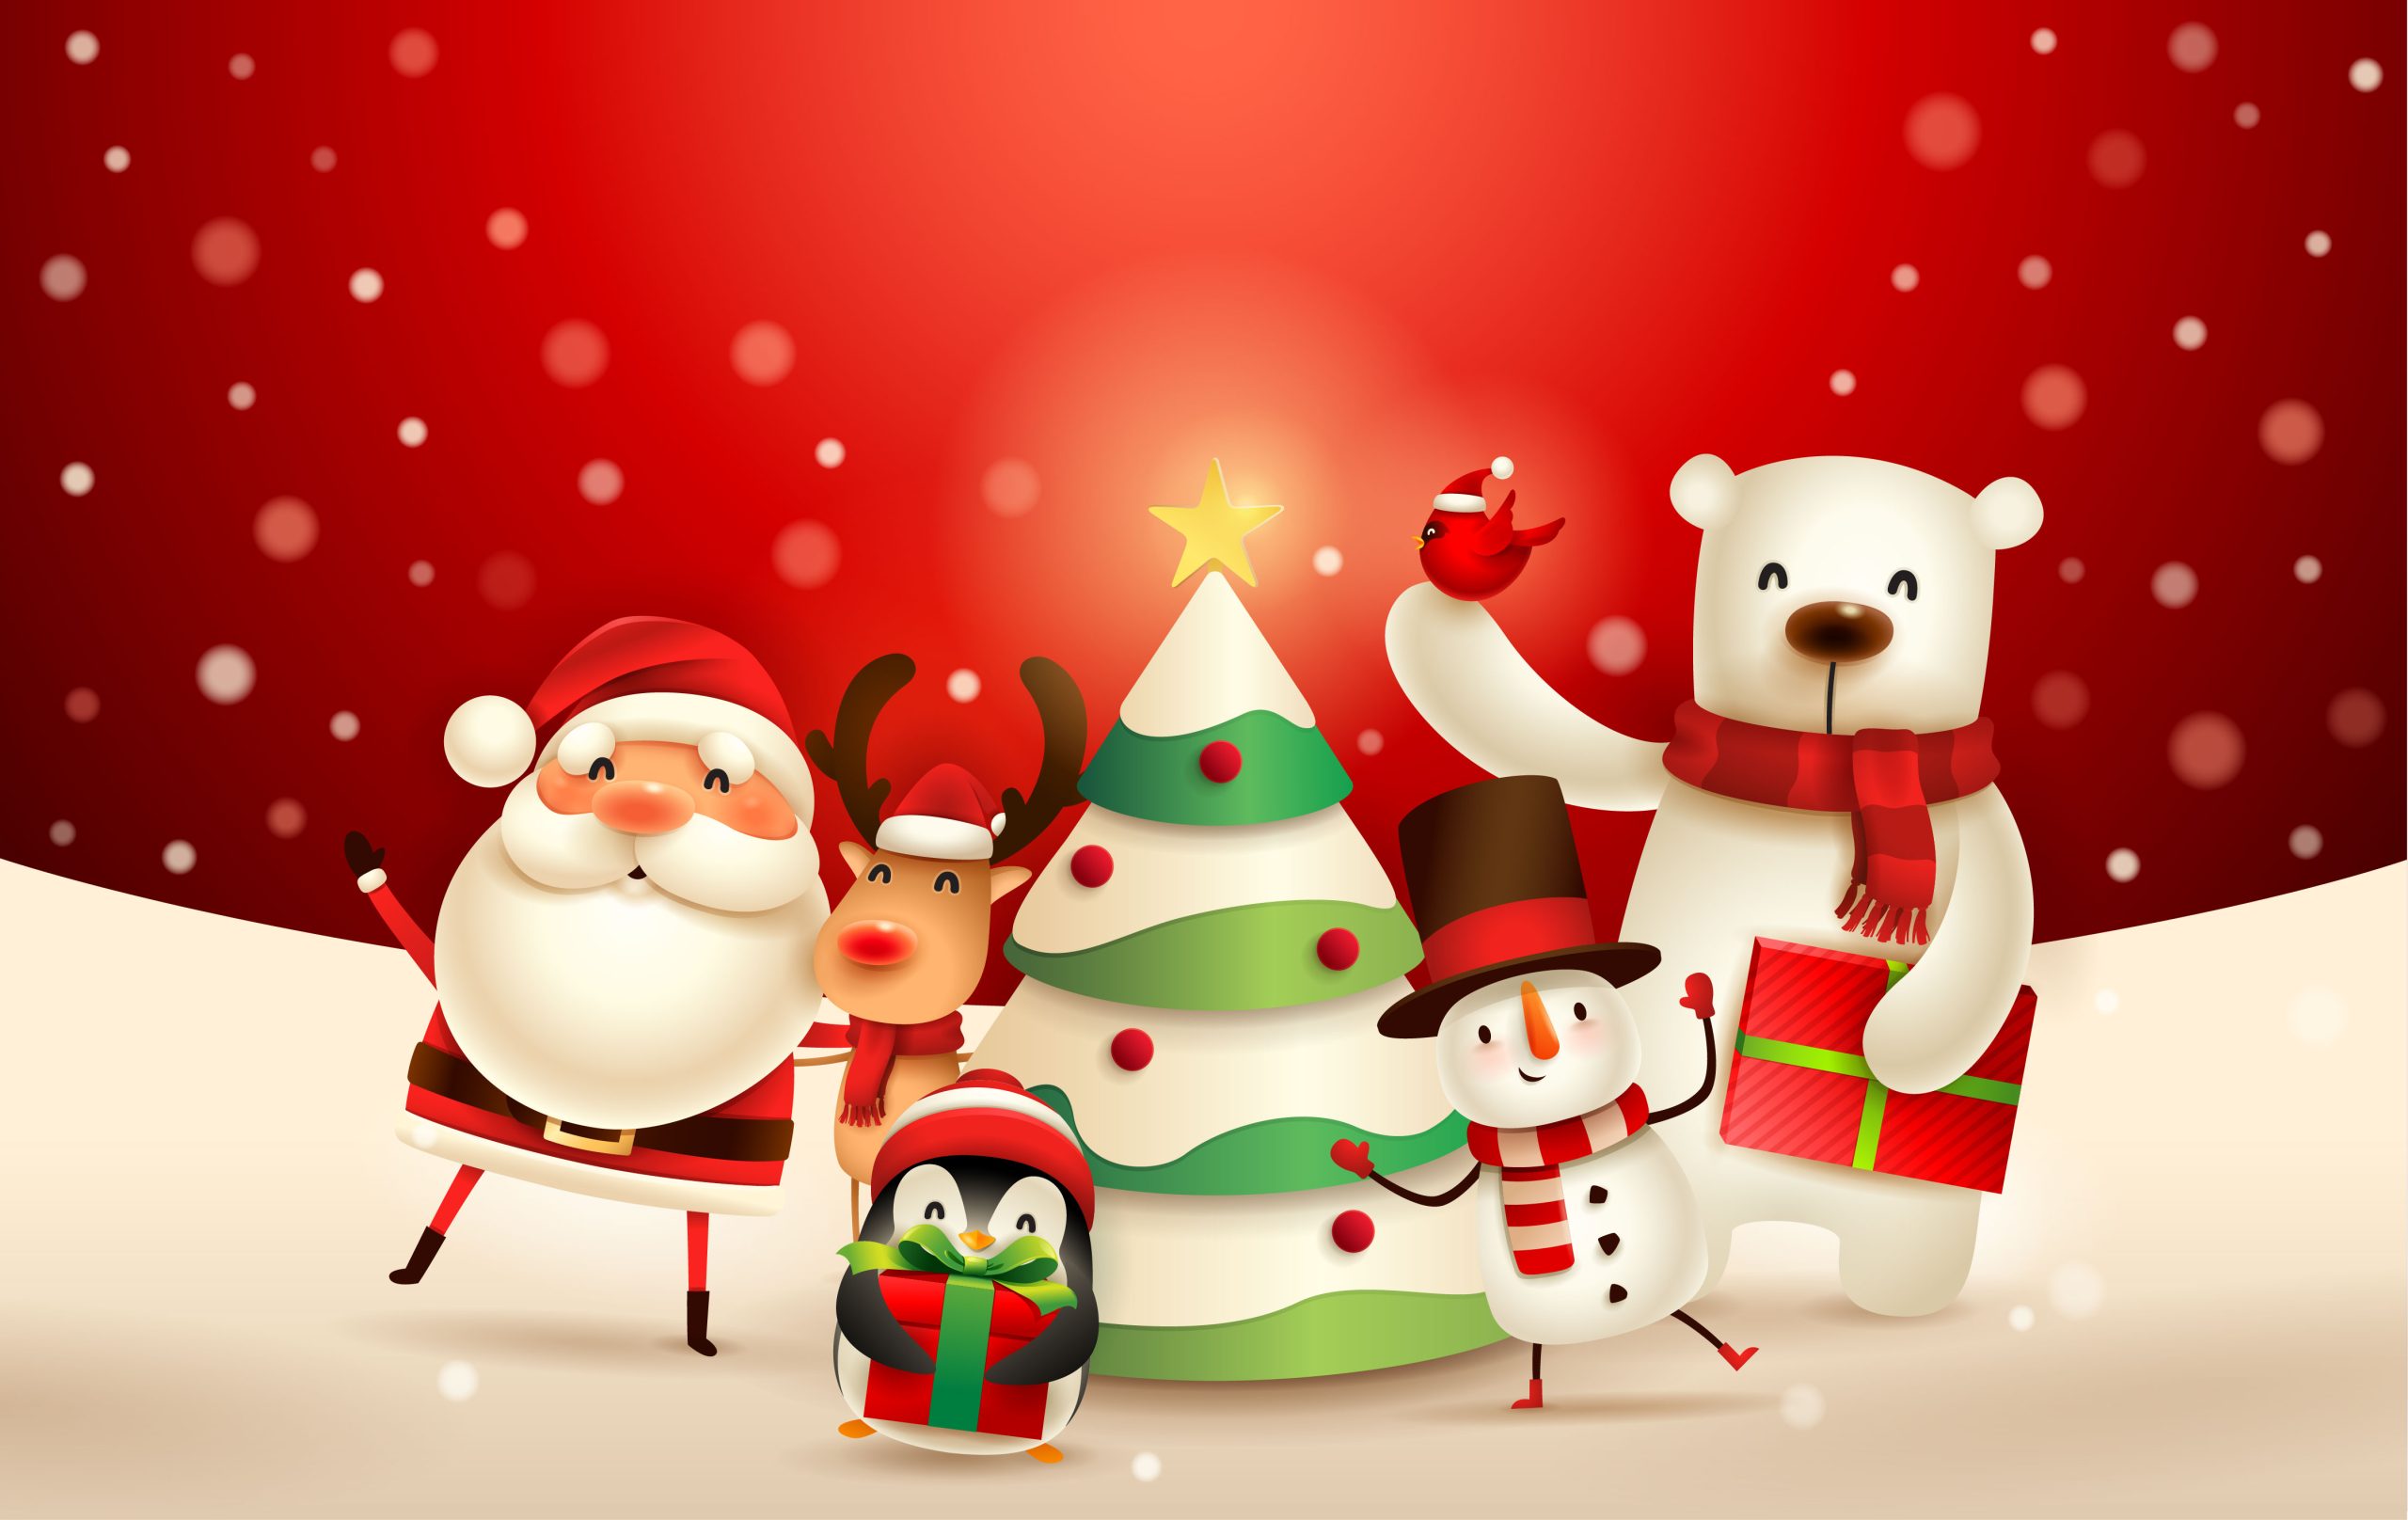 Cartoon Christmas characters including Santa, elf, reindeer, penguin, snowman and polar bear around a Christmas tree